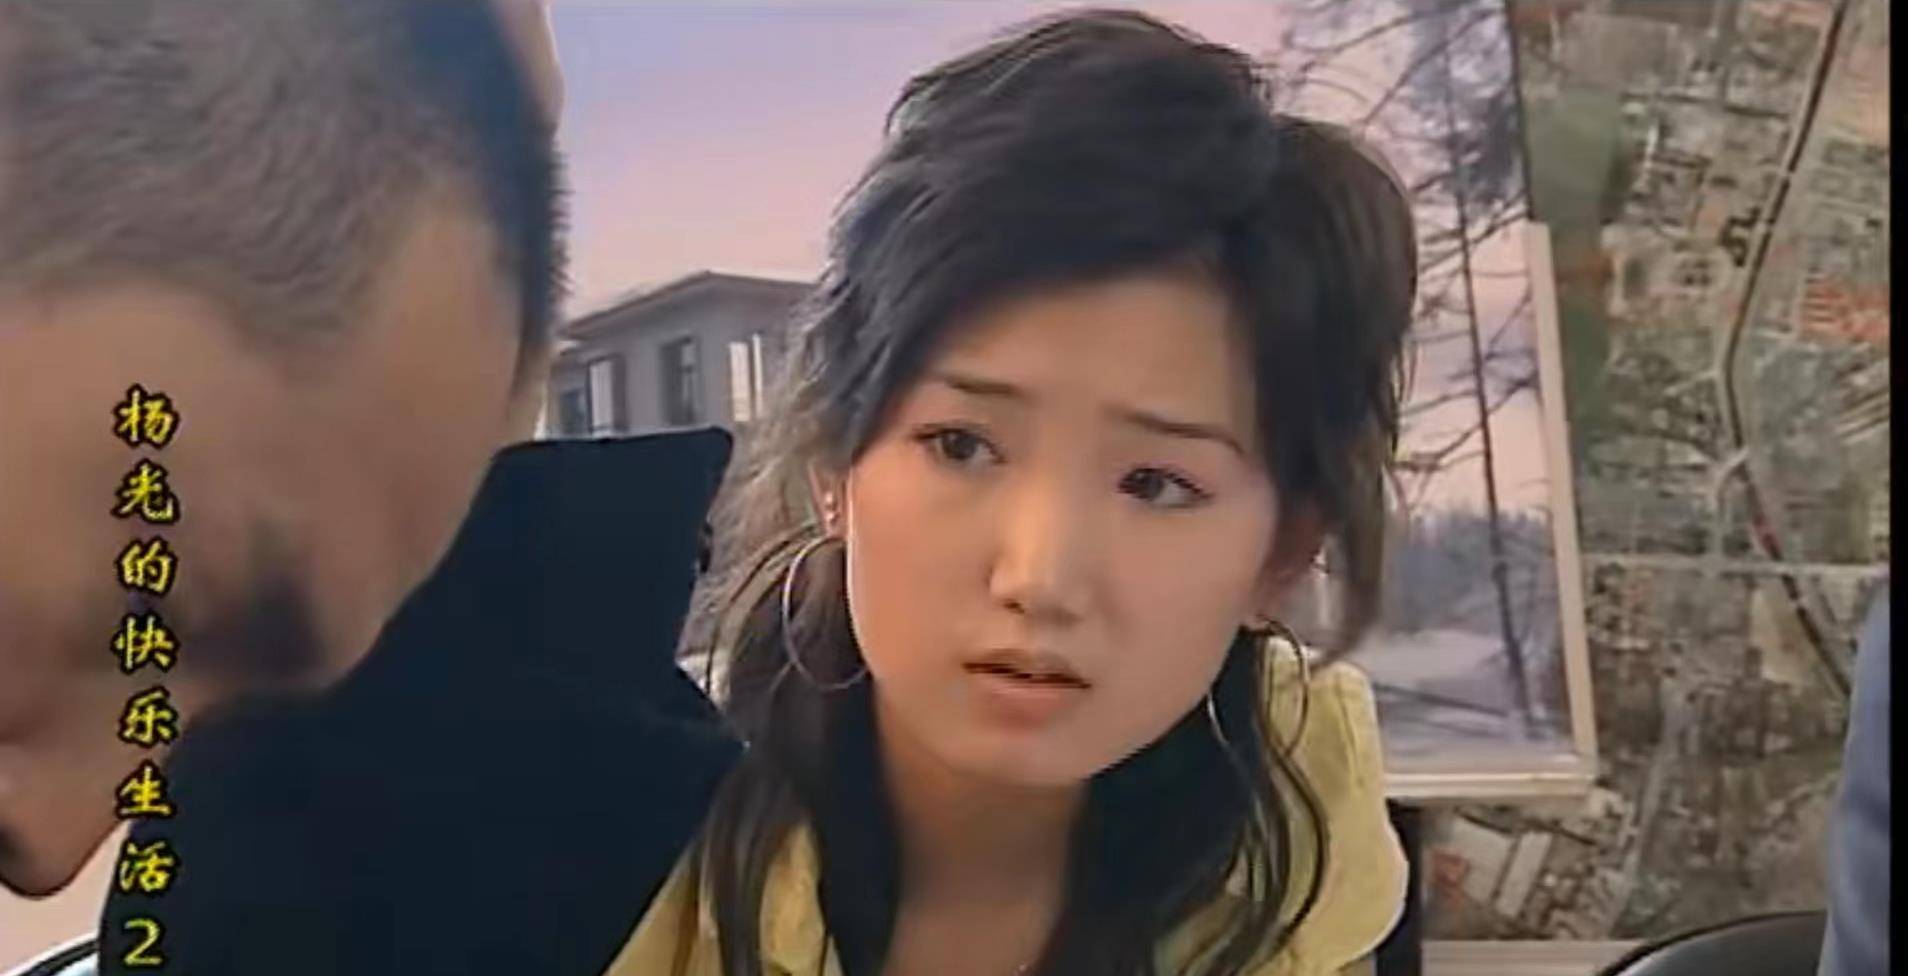 2005年,毛晓彤终于等来了机会,参演了电视剧《杨光的快乐生活2》,在剧